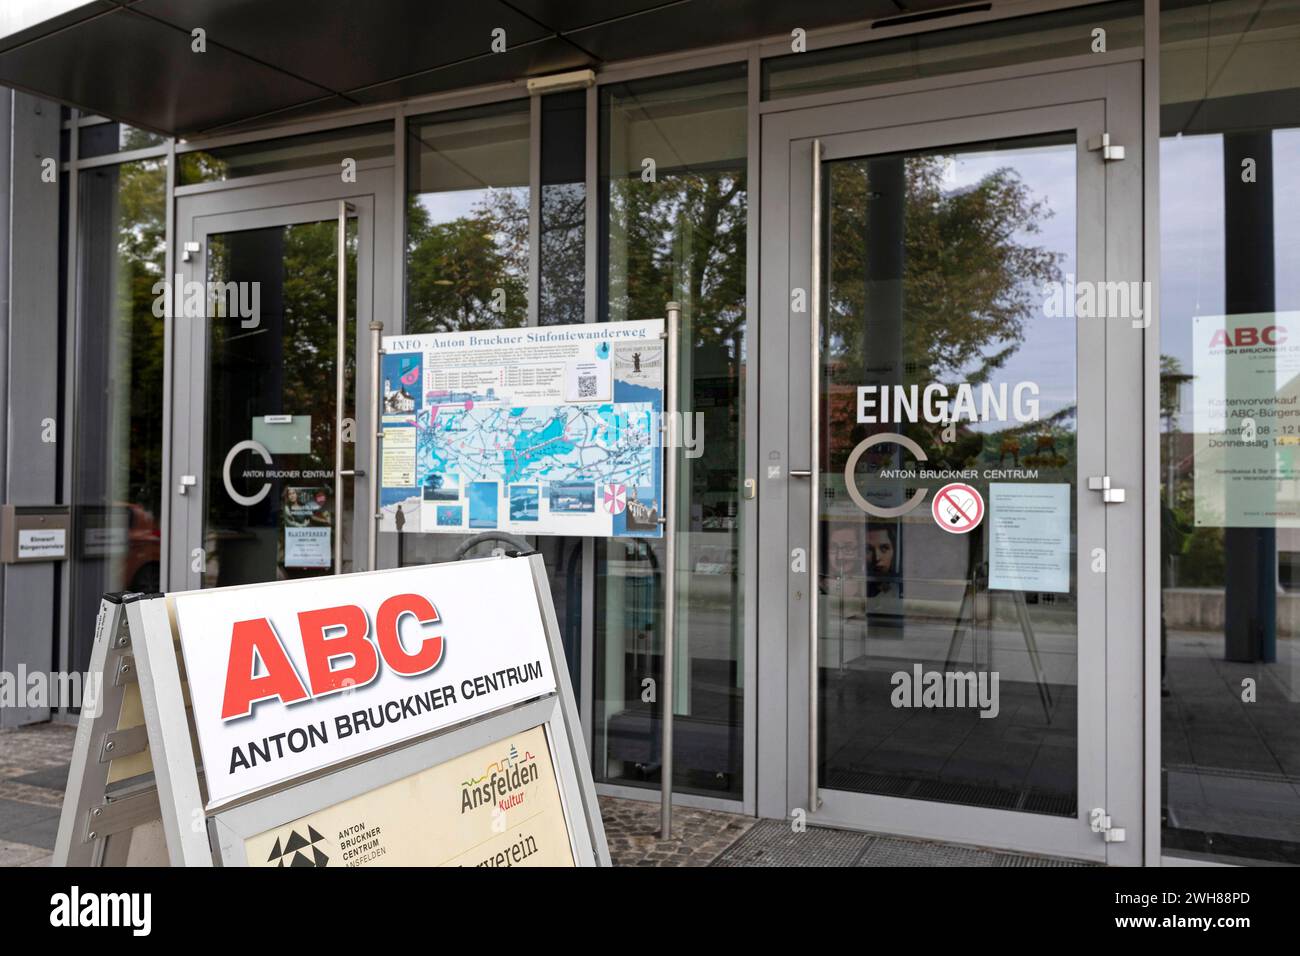 ABC Anton Bruckner Centrum, Ansfelden, Upper Austria, Austria Stock Photo